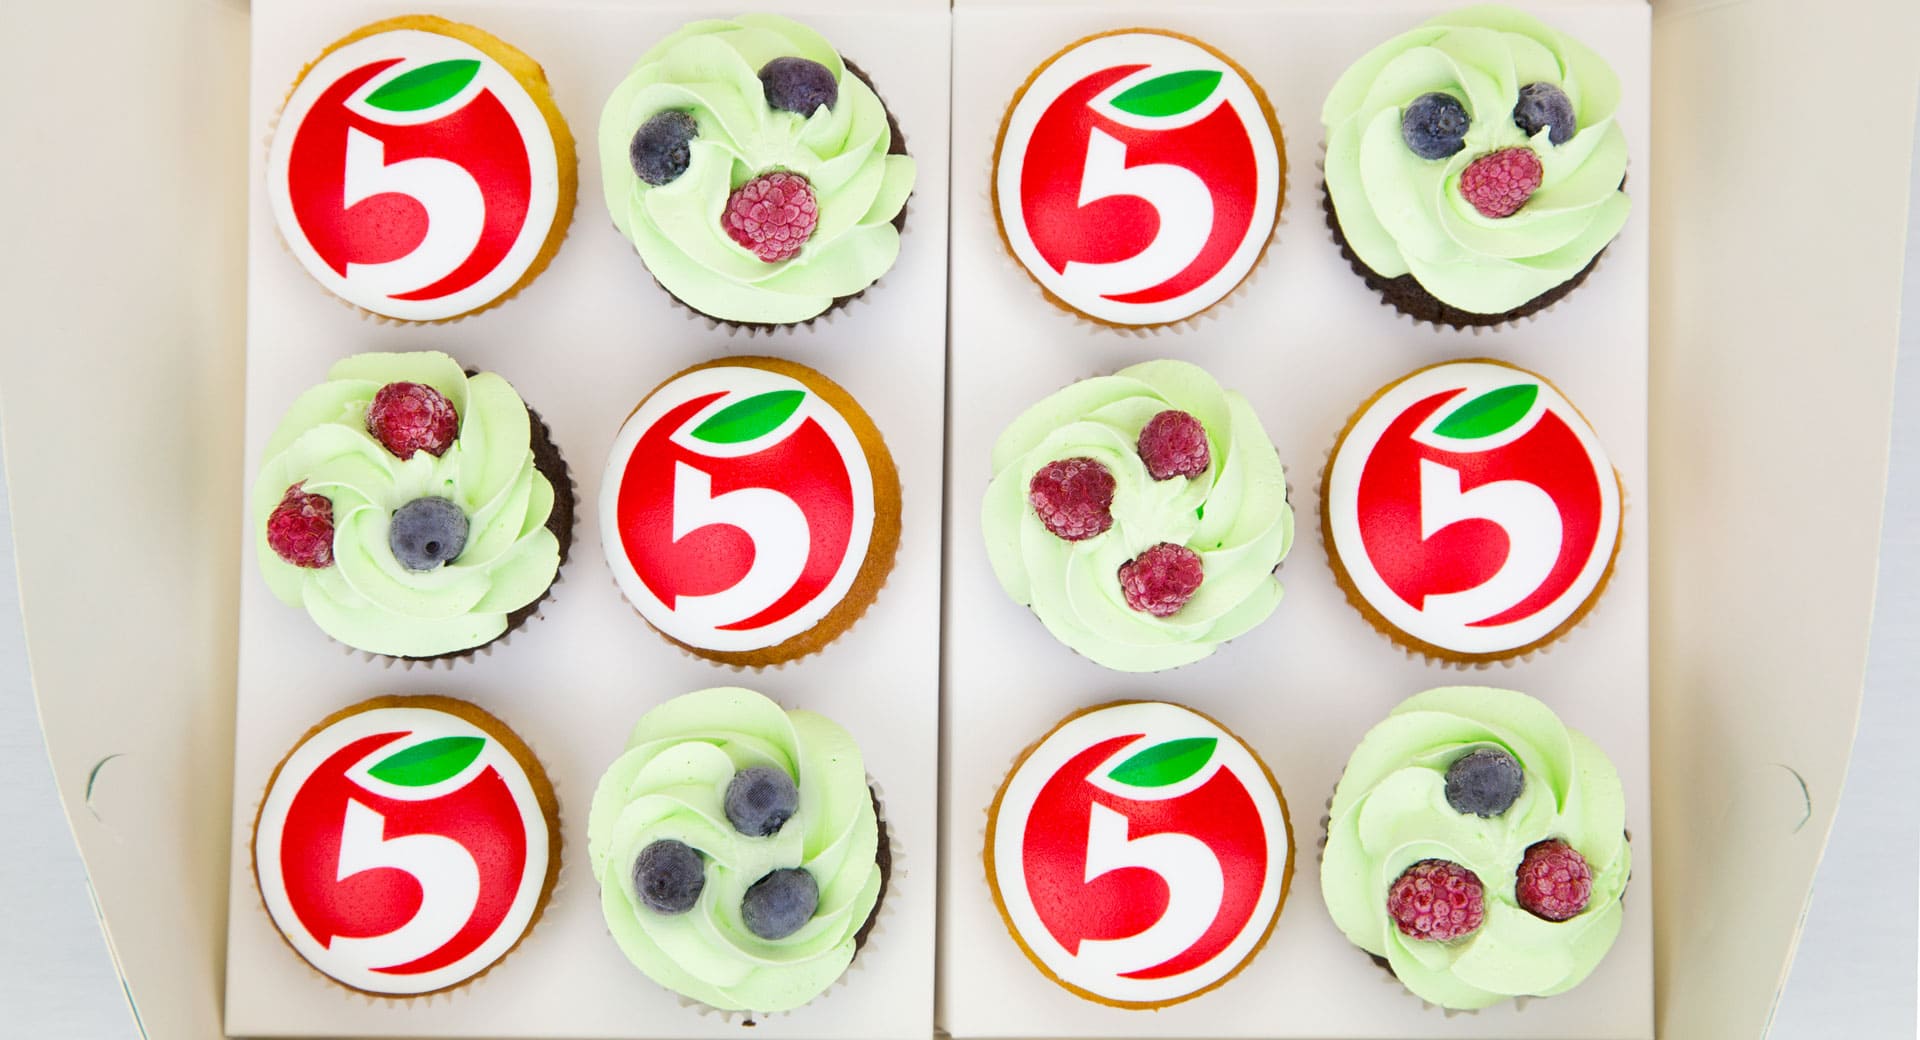 Брендированный подарочный набор от Пятерочки - капкейки с лого и ягодами